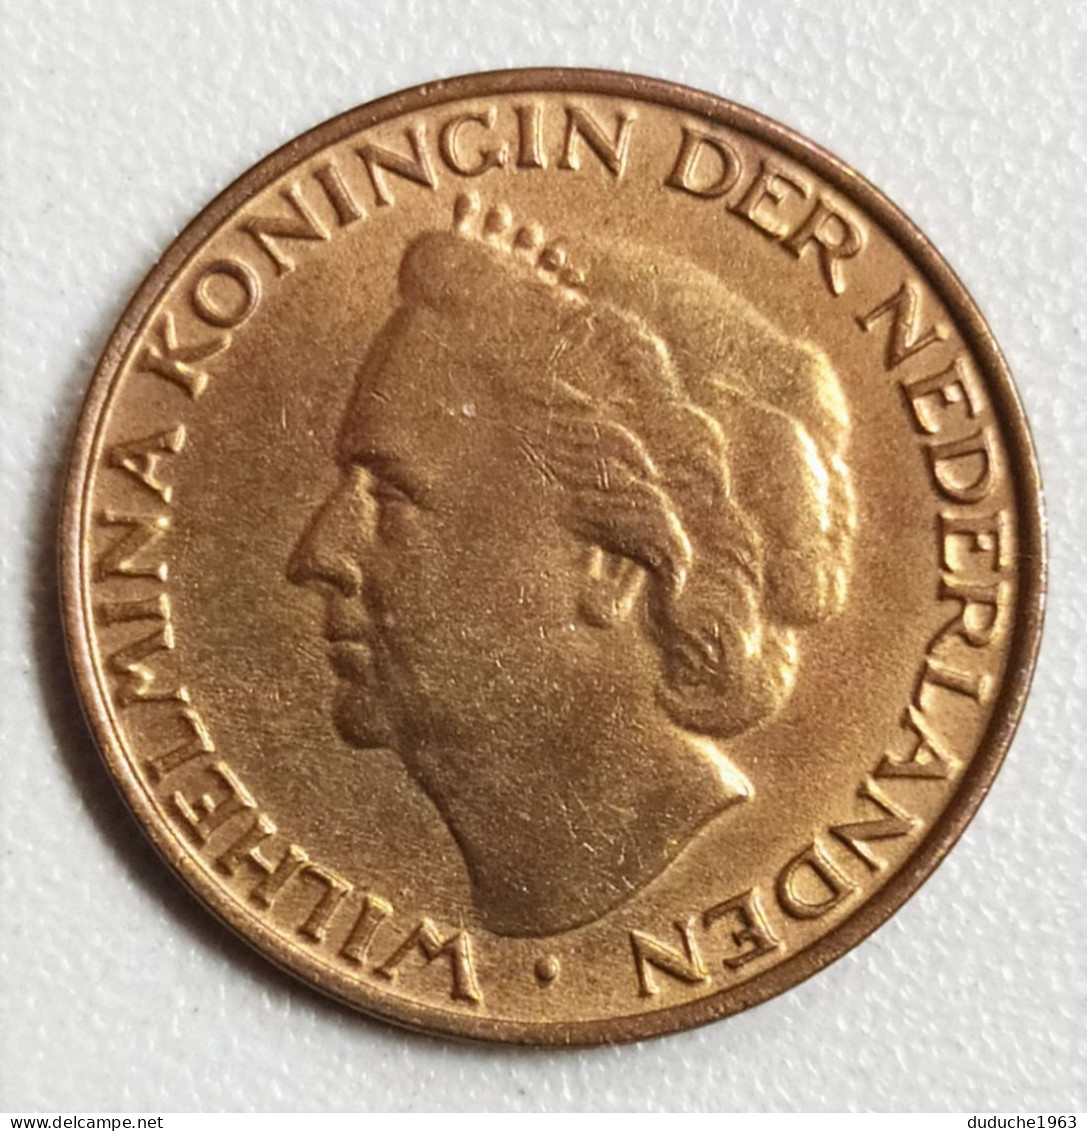 Pays-Bas - 5 Cents 1948 - 1948-1980 : Juliana